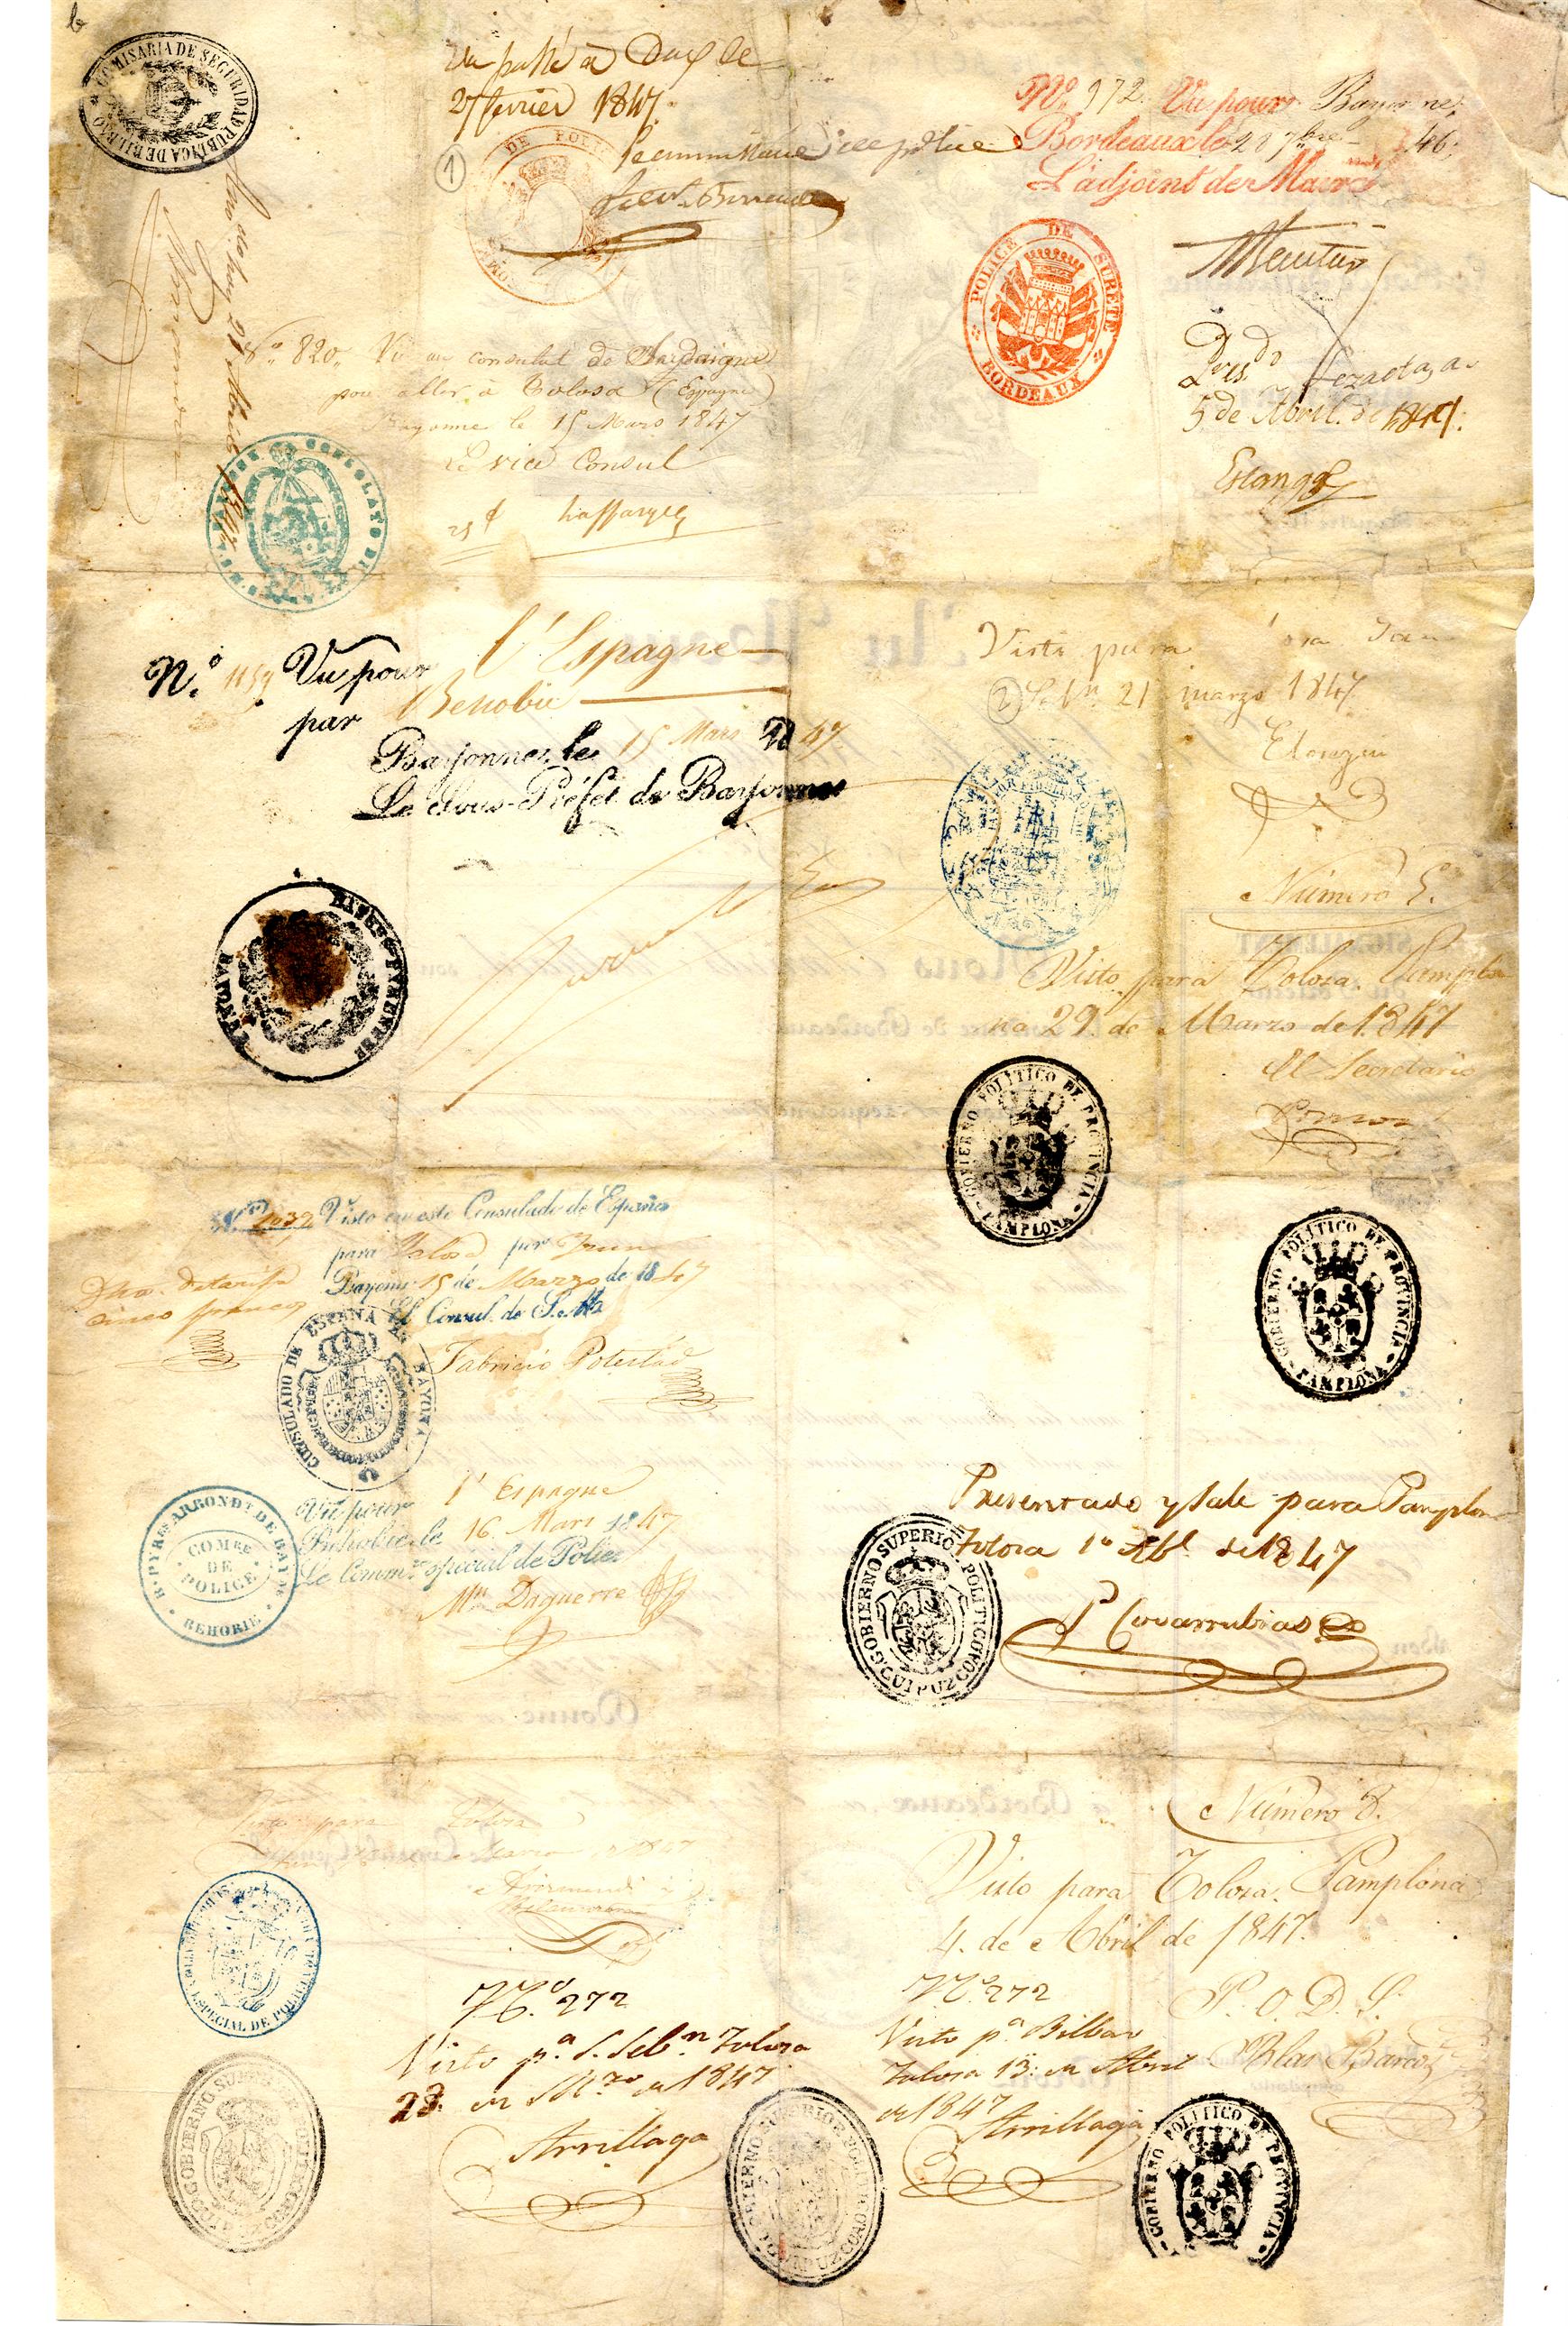 Passaporte de Giorgio Piretti